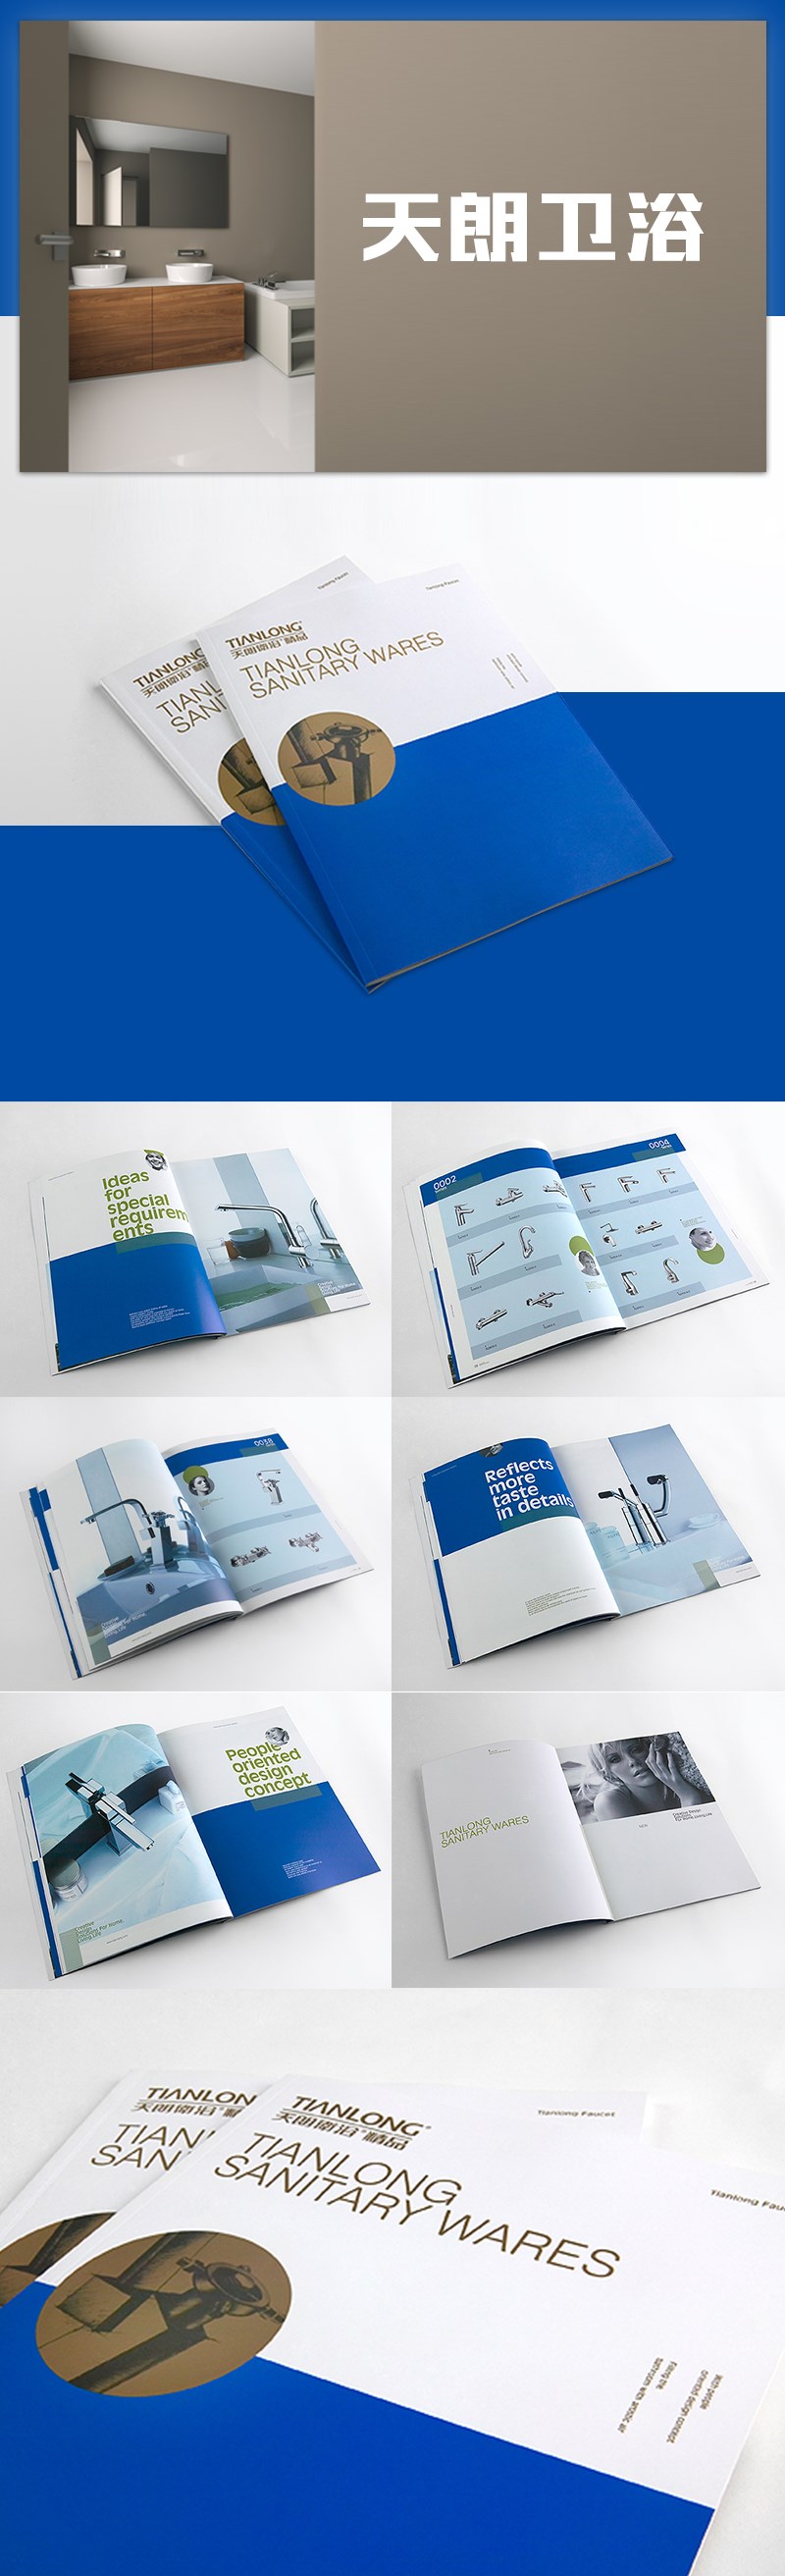 浙江天朗卫浴宣传画册 画册设计 平面设计